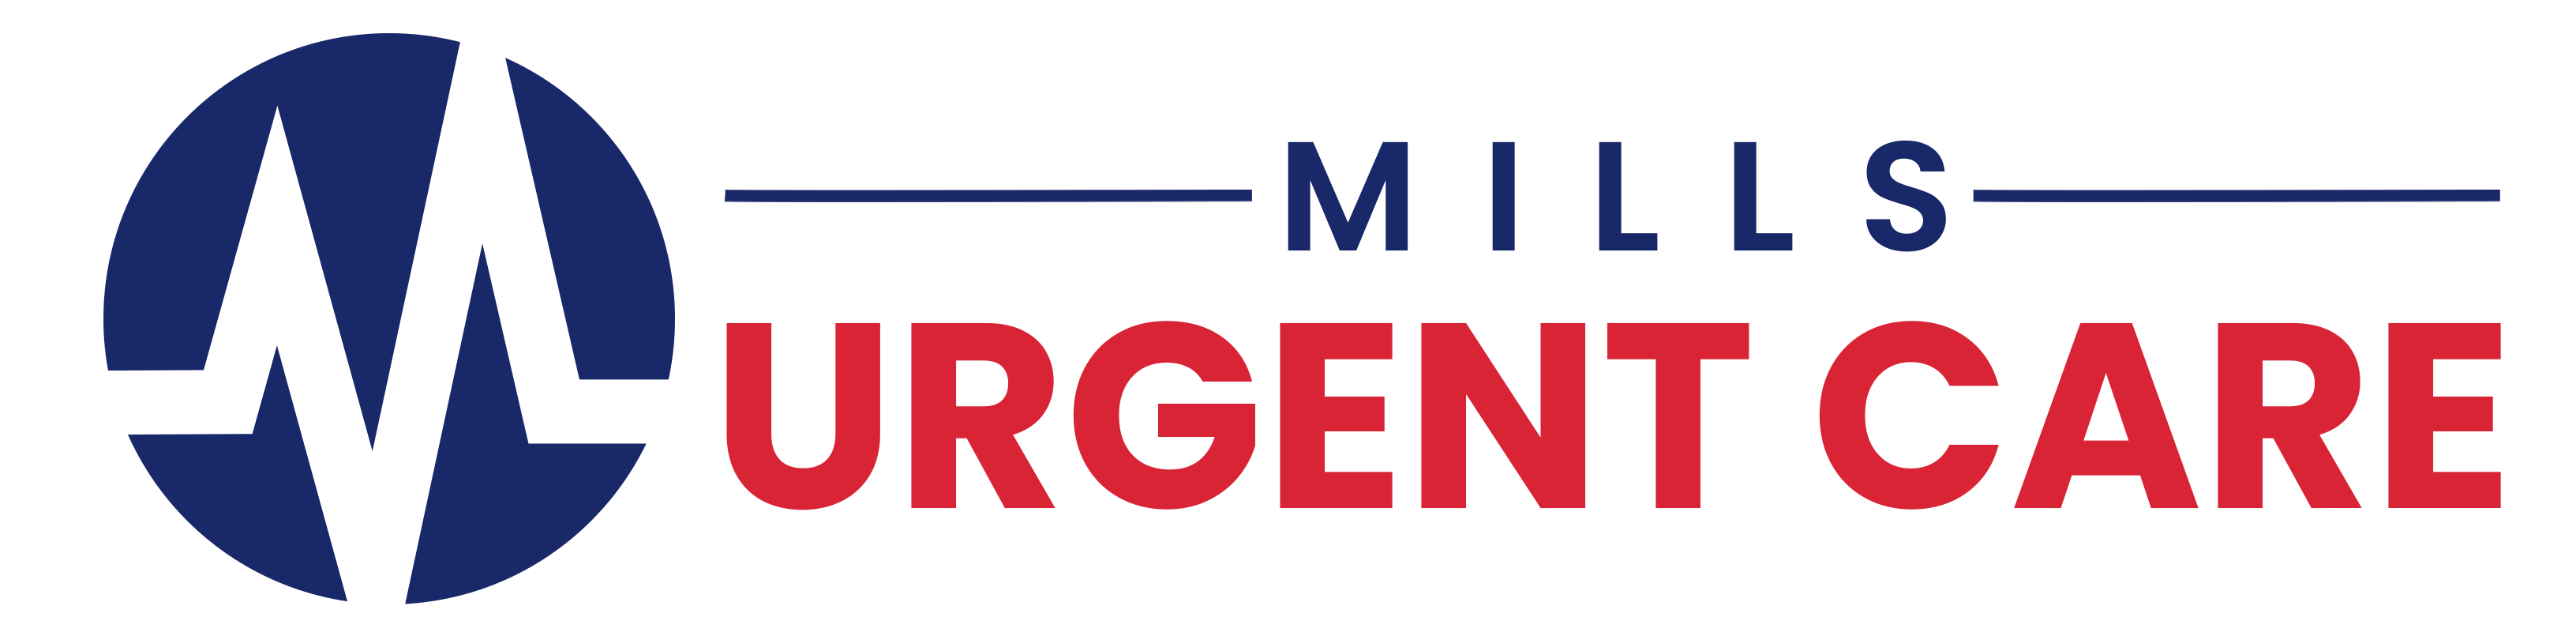 Mills Urgent Care logo